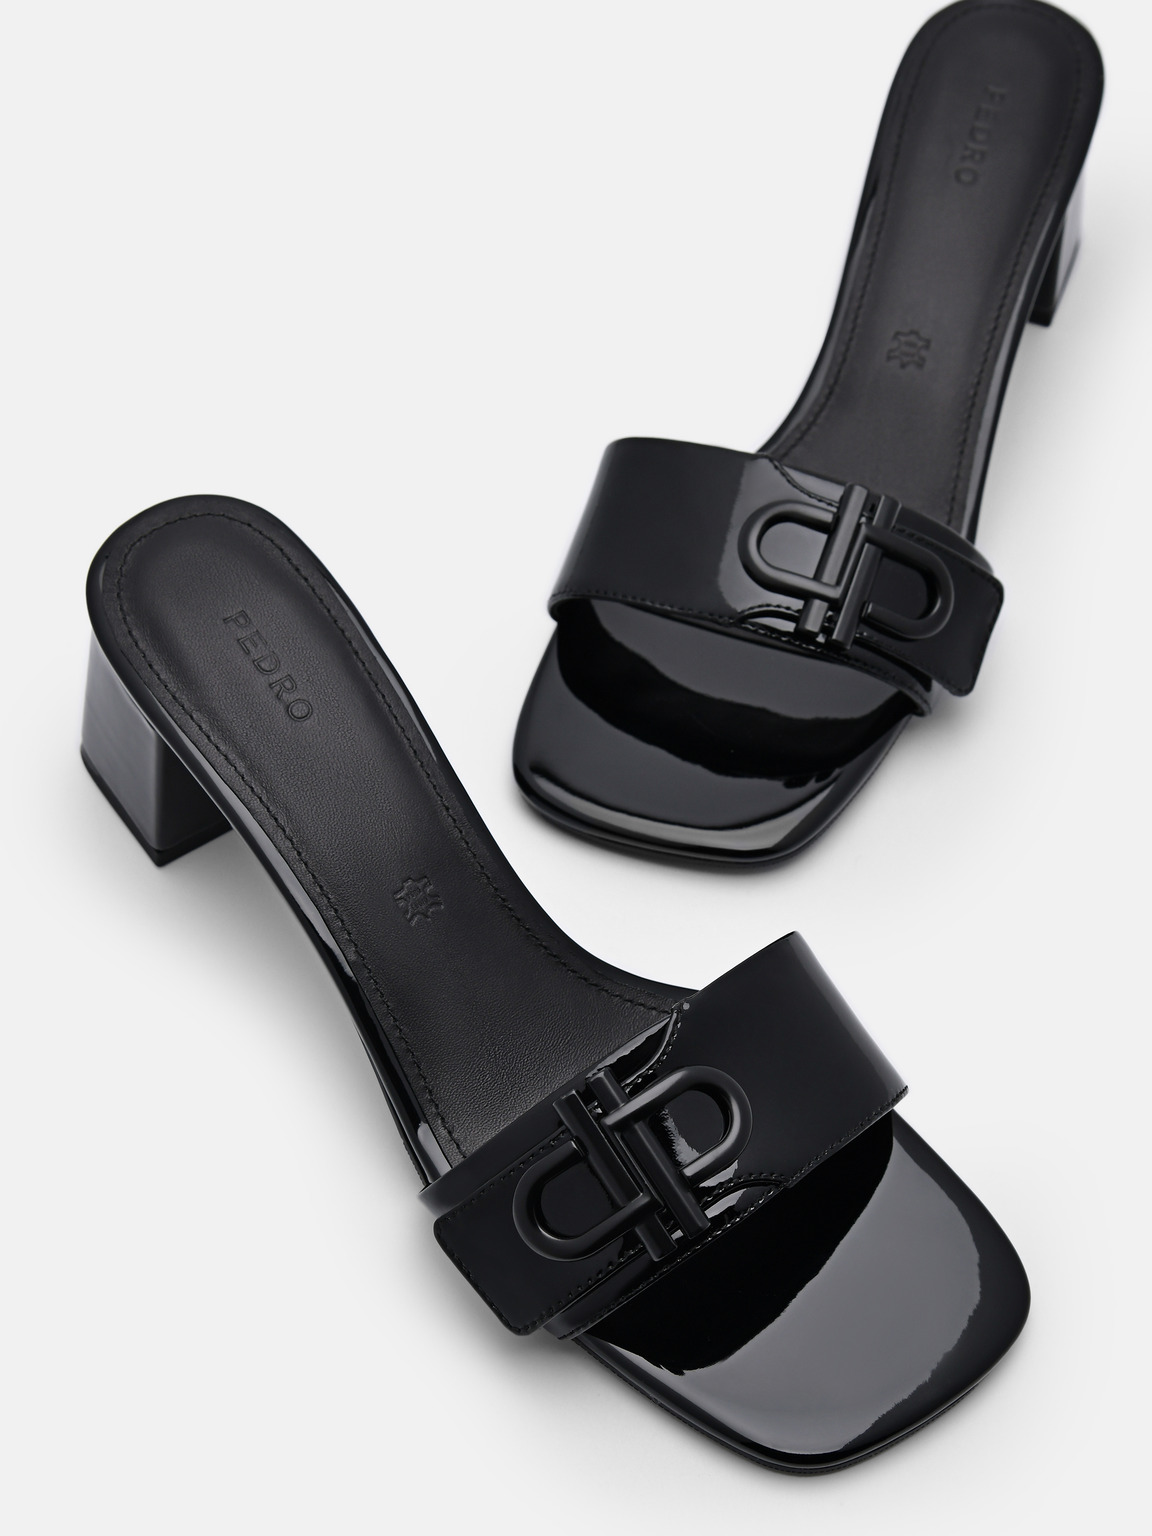 PEDRO Icon Leather Heel Sandals, Black